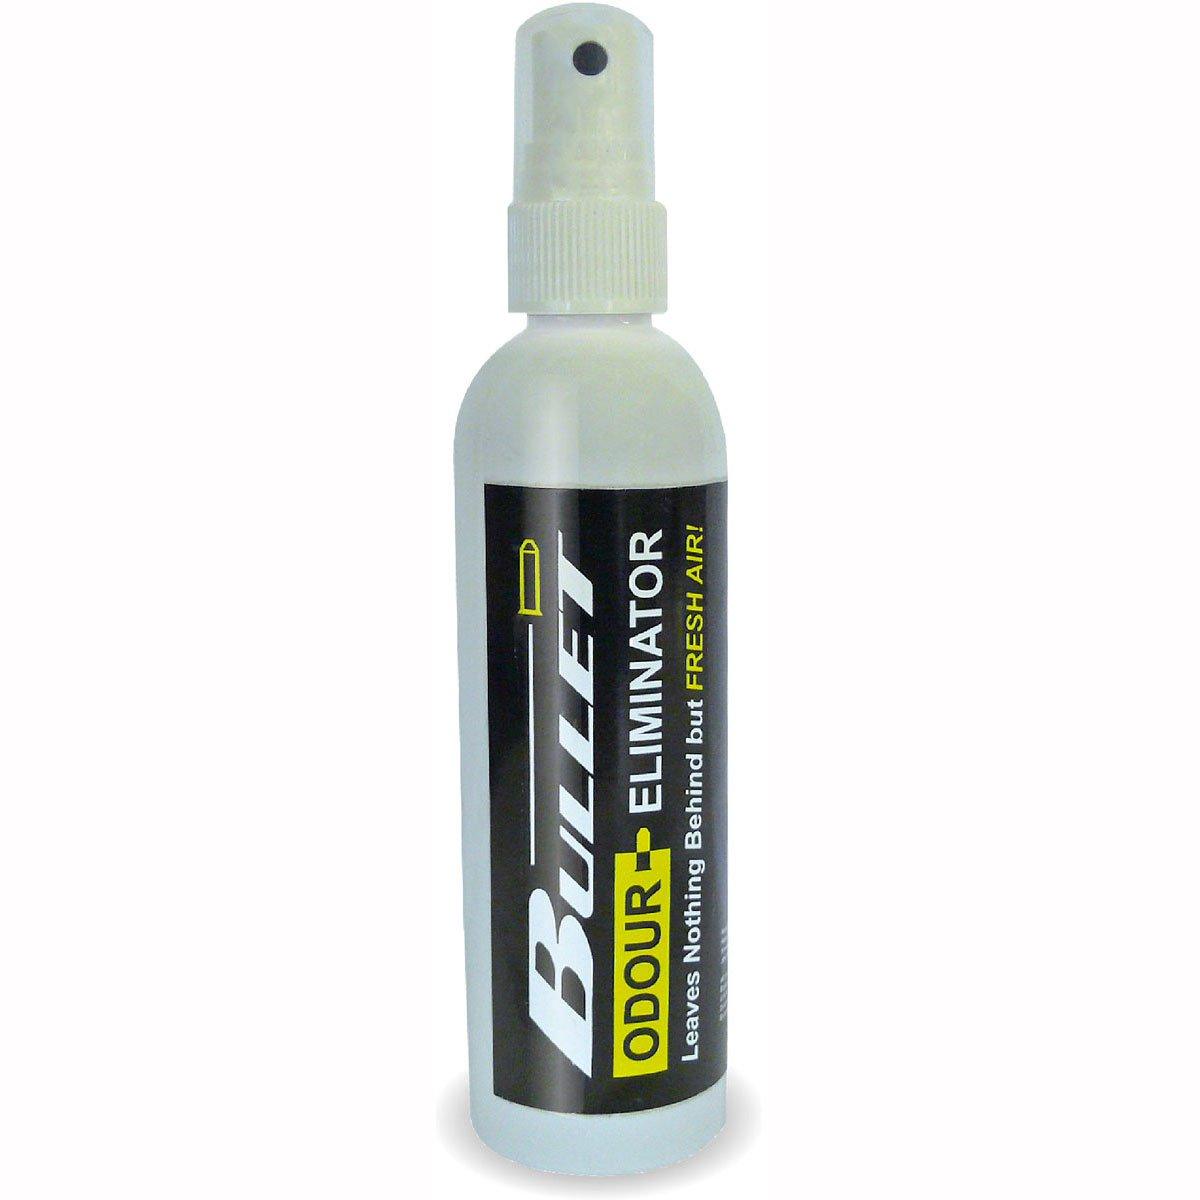 Bullet Odour Eliminator Spray - 125ml - Banish that smell